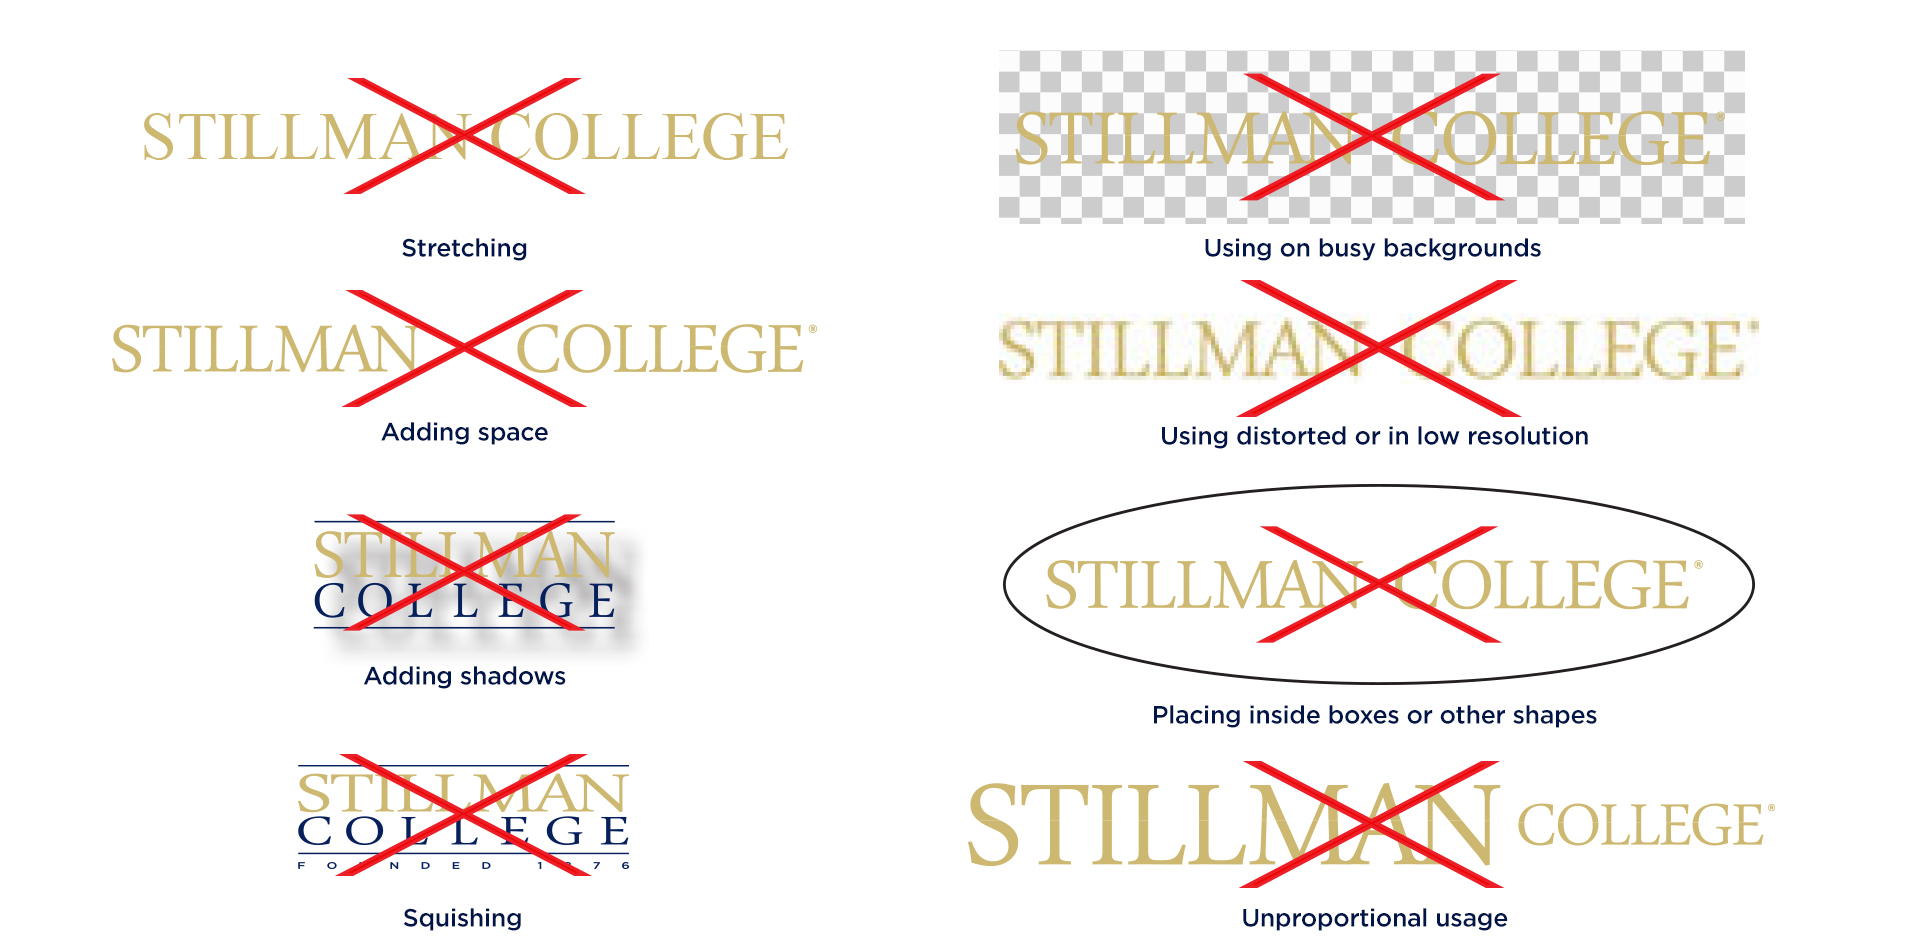 Stillman College - Improper Logo Usage